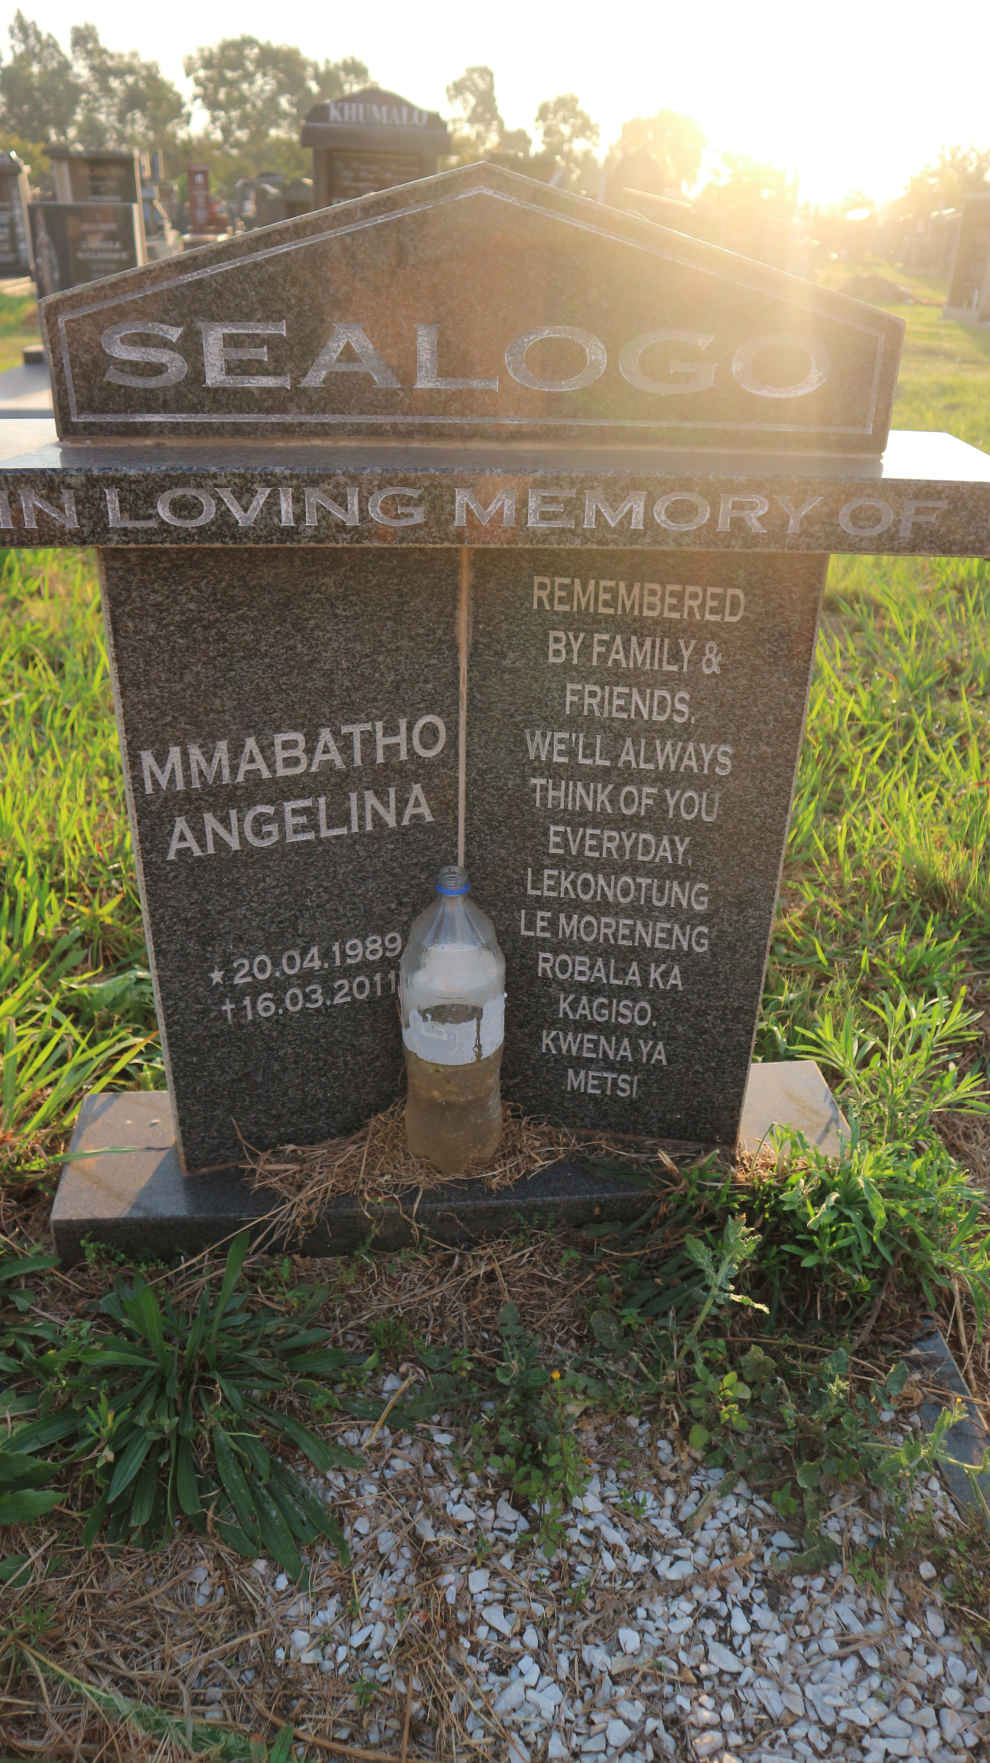 SEALOGO Mmabatho Angelina 1989-2011